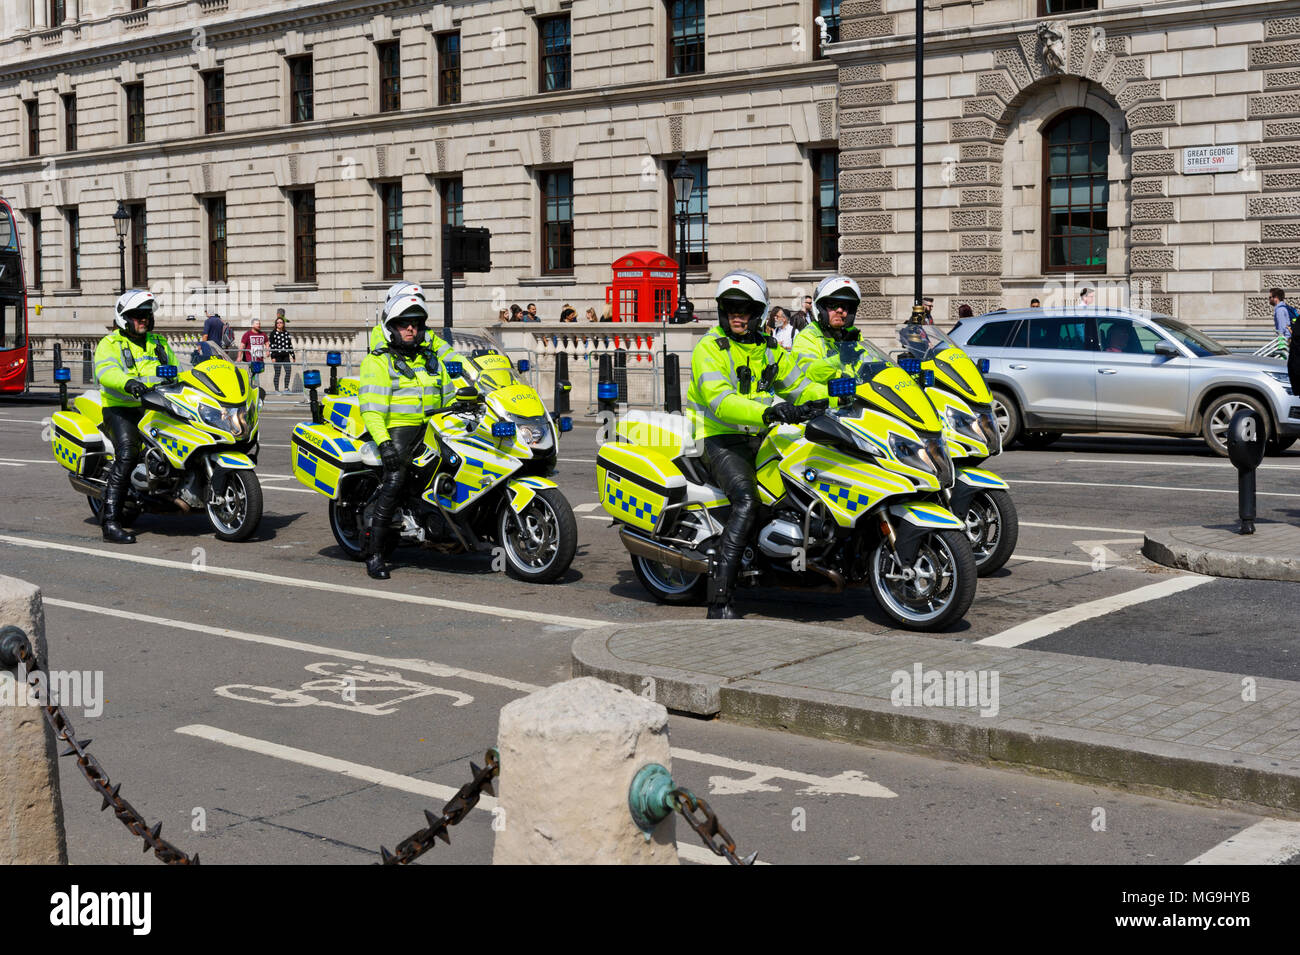 Sur les motos de la Police métropolitaine, Londres, Angleterre, Royaume-Uni Banque D'Images